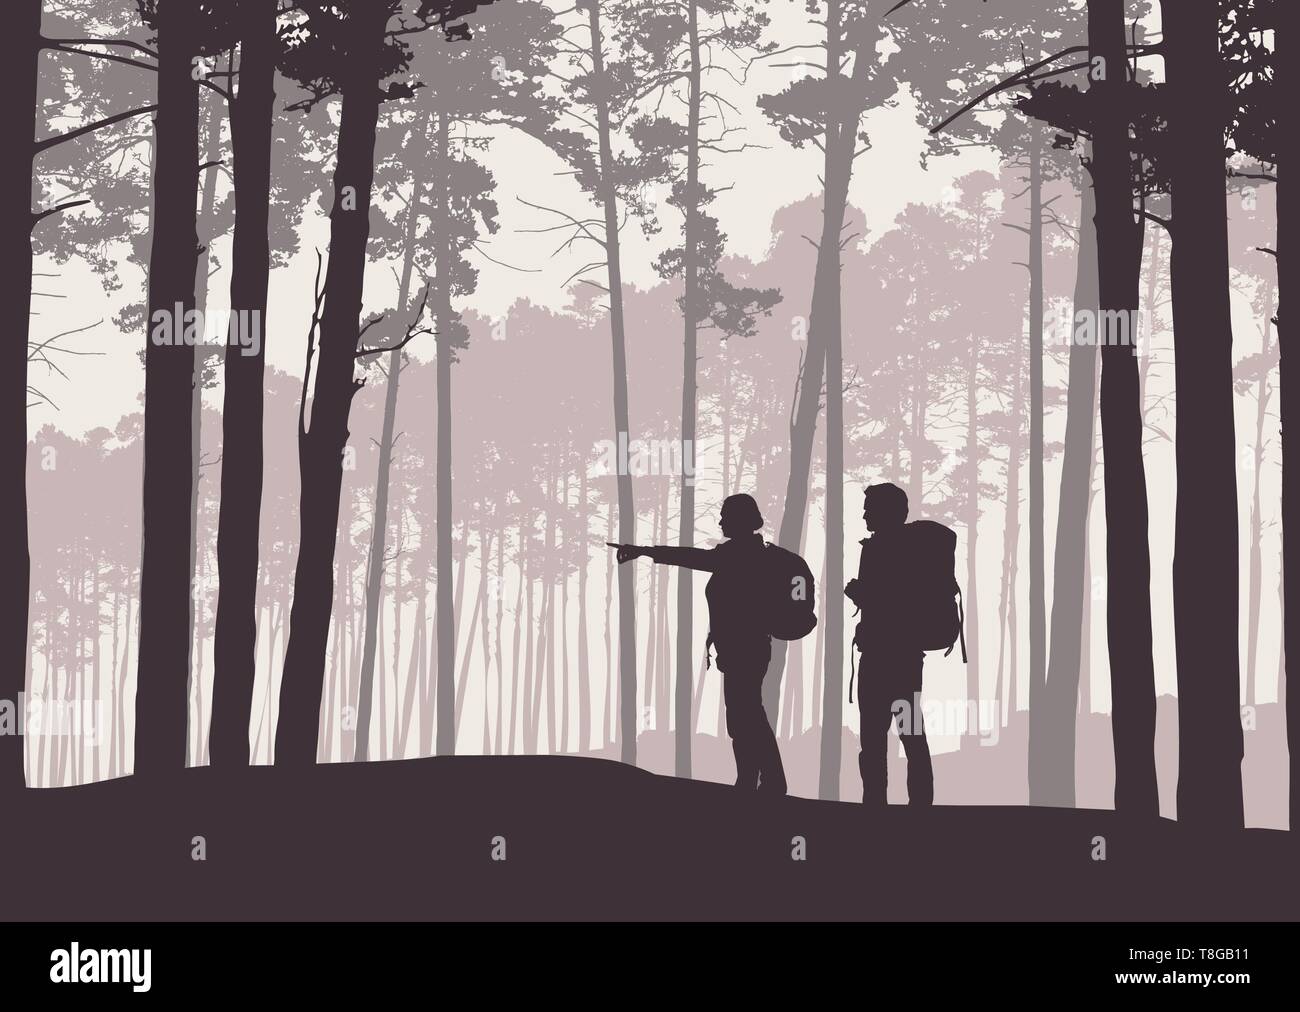 Realistische Abbildung von retro Landschaft Silhouetten mit Wald- und Nadelbäume. Zwei Wanderer, Mann und Frau, mit Rucksäcken. Zeigt Hand Path-Ve Stock Vektor